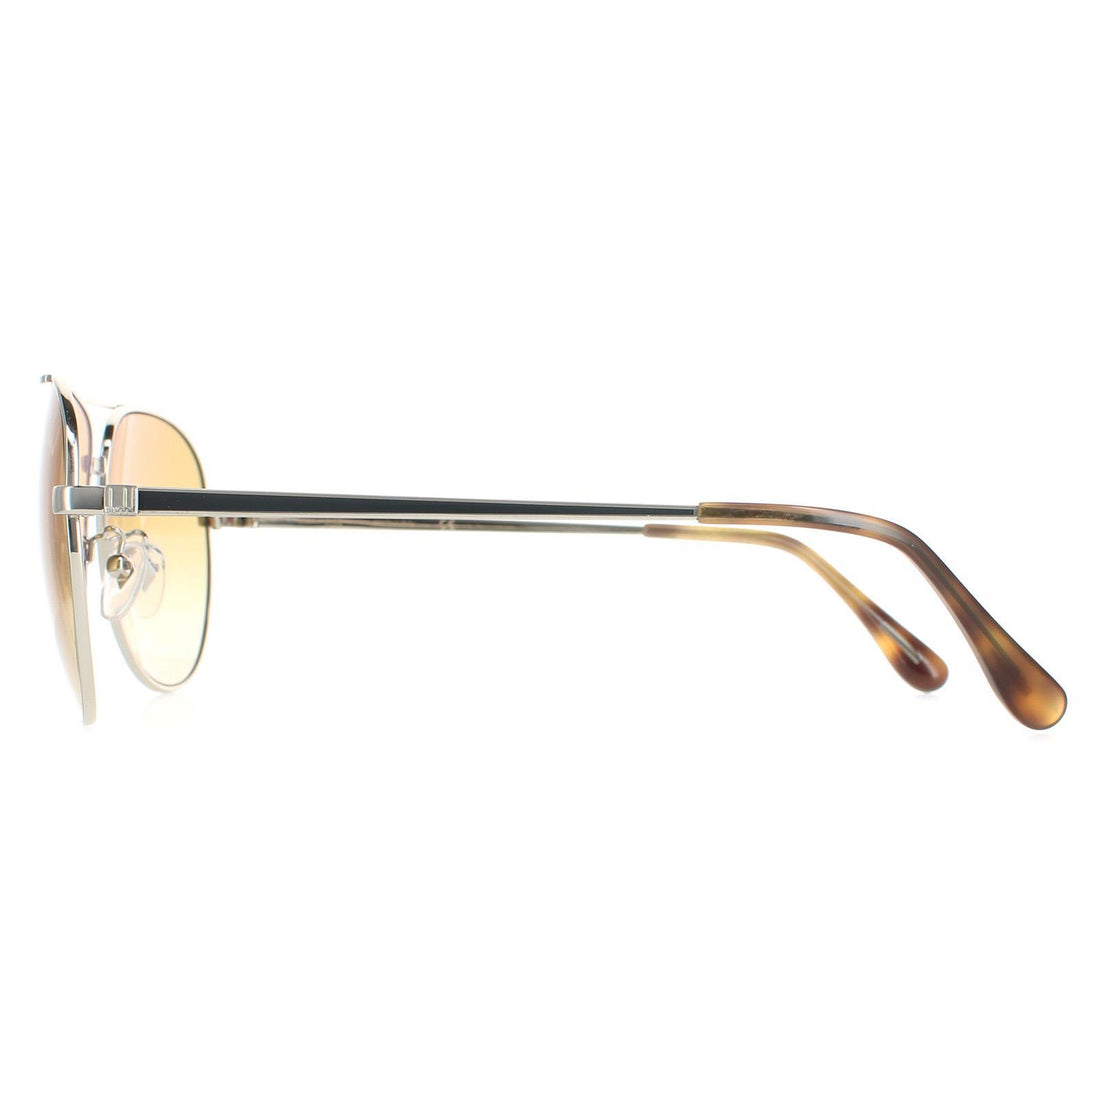 Dunhill SDH193 Sunglasses